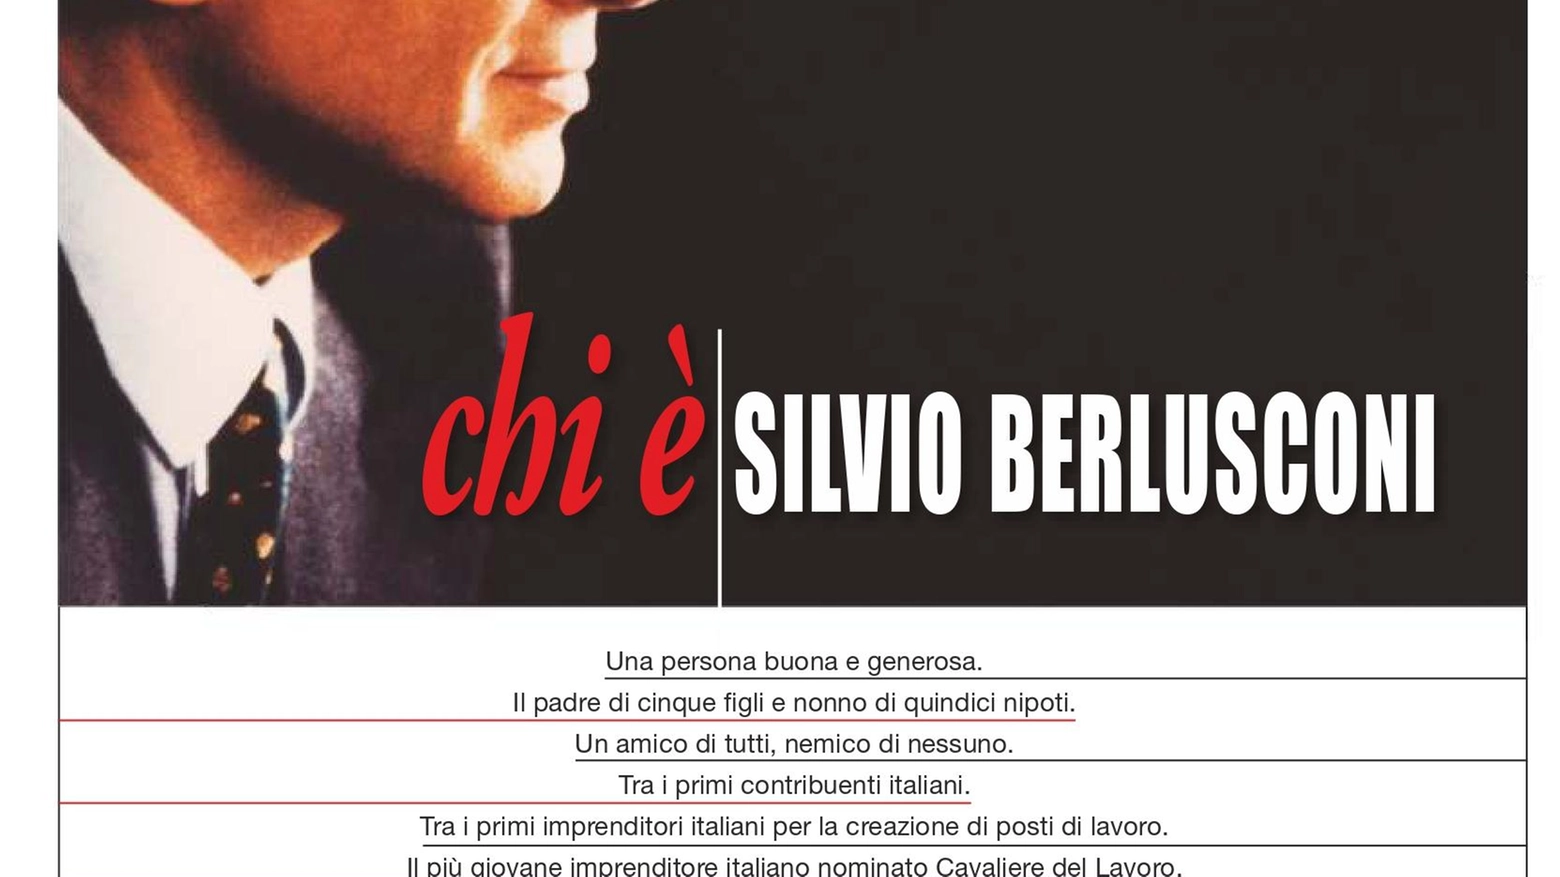 La pagina pubblicitaria per Berlusconi